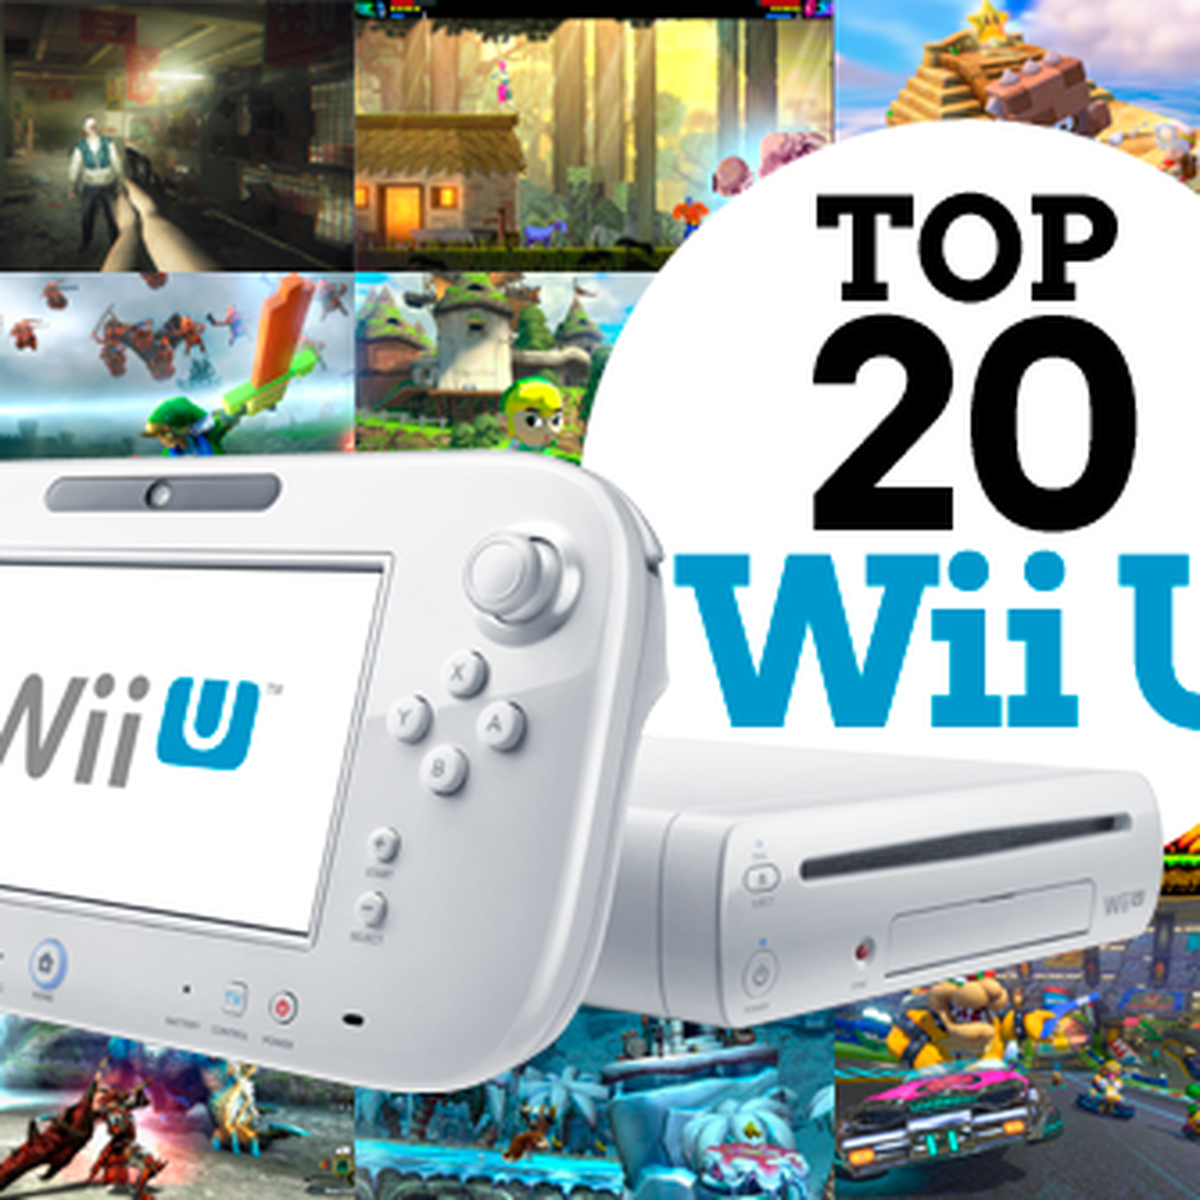 Exclusivo de Wii U finalmente llegaría a Switch